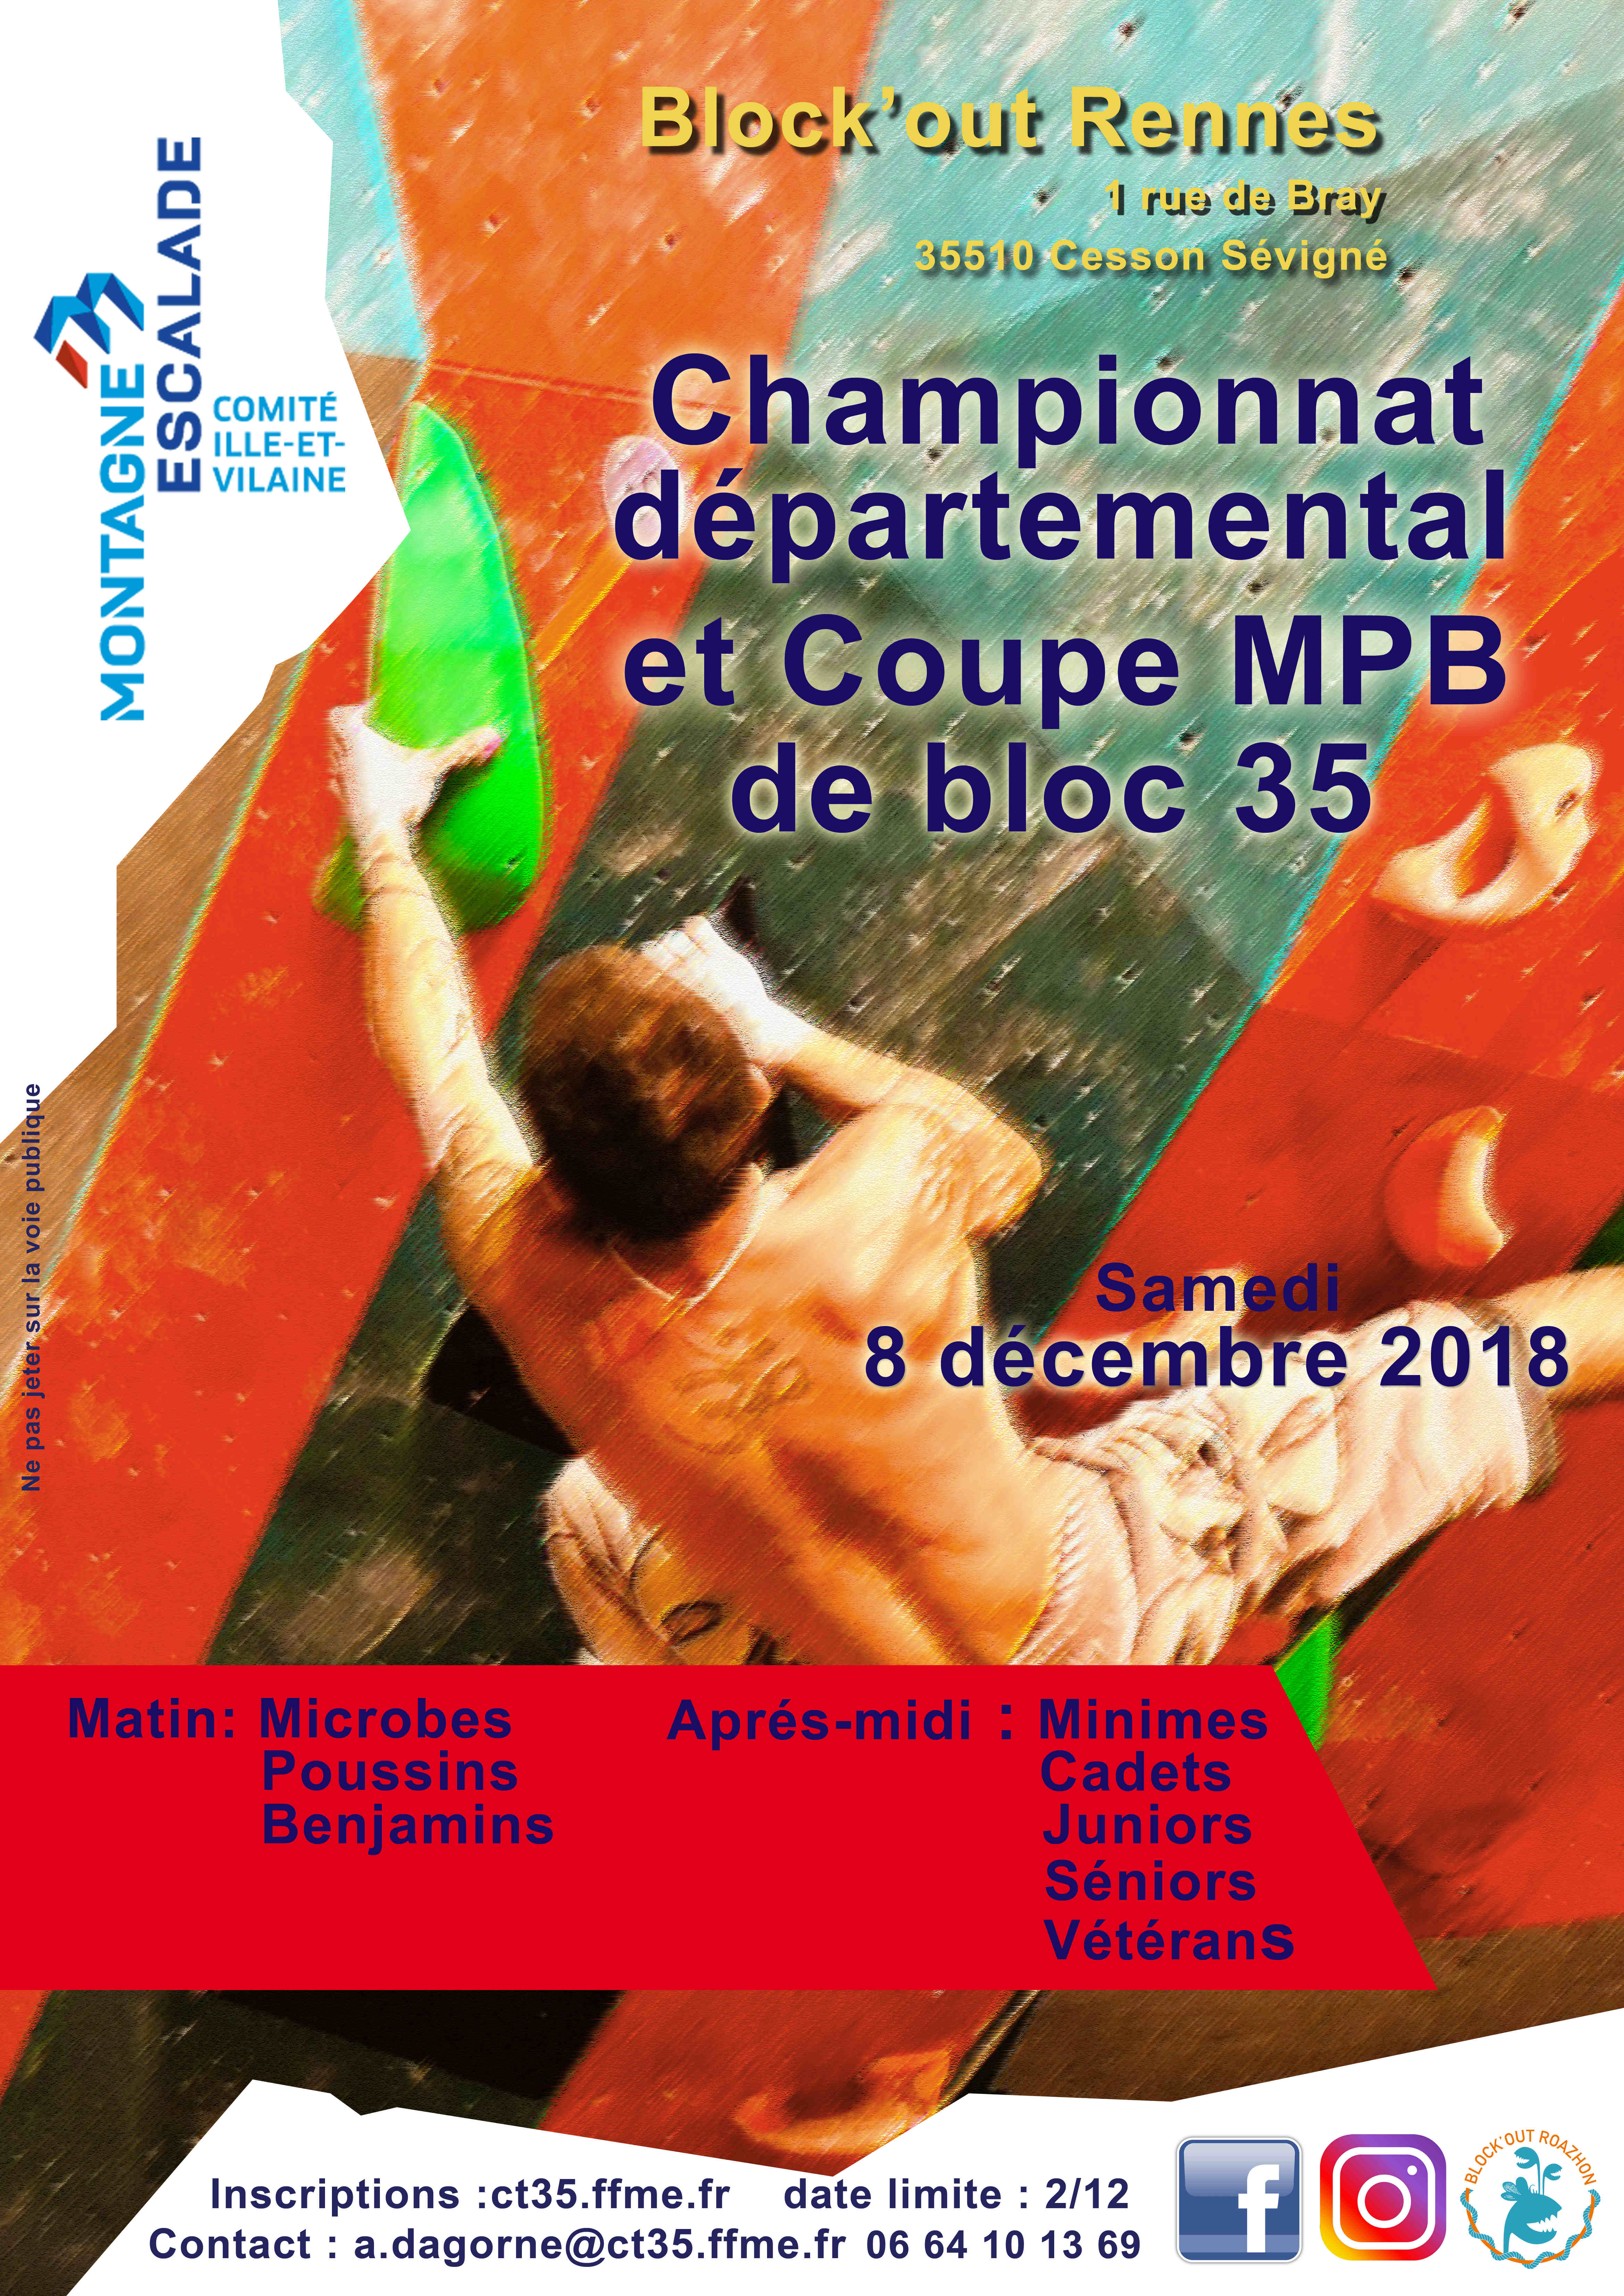 Votre salle d'escalade accueille le Championnat Départemental et Coupe MPB de Bloc 35